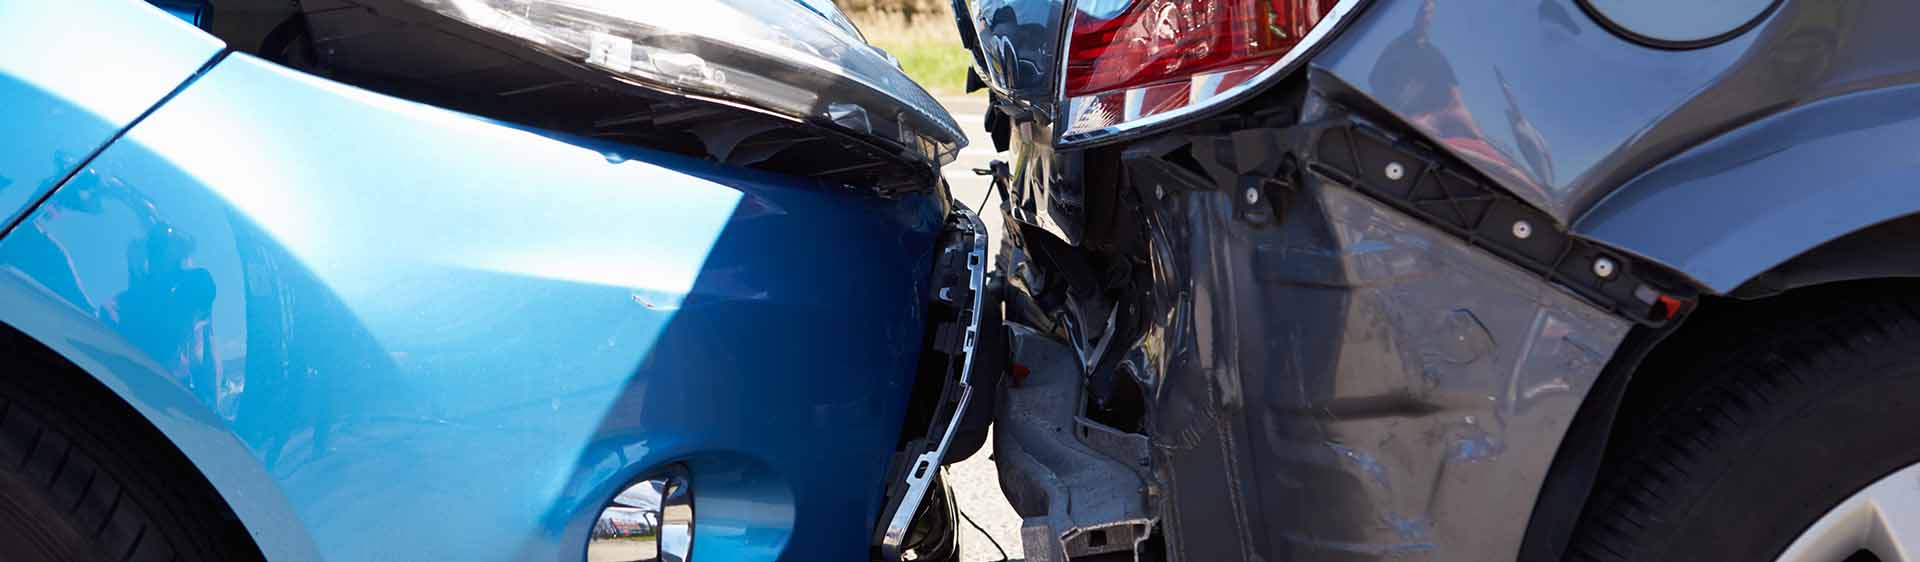 Ontario Car Accident Investigation, Traffic Accident Investigation and Car Accident Reconstruction